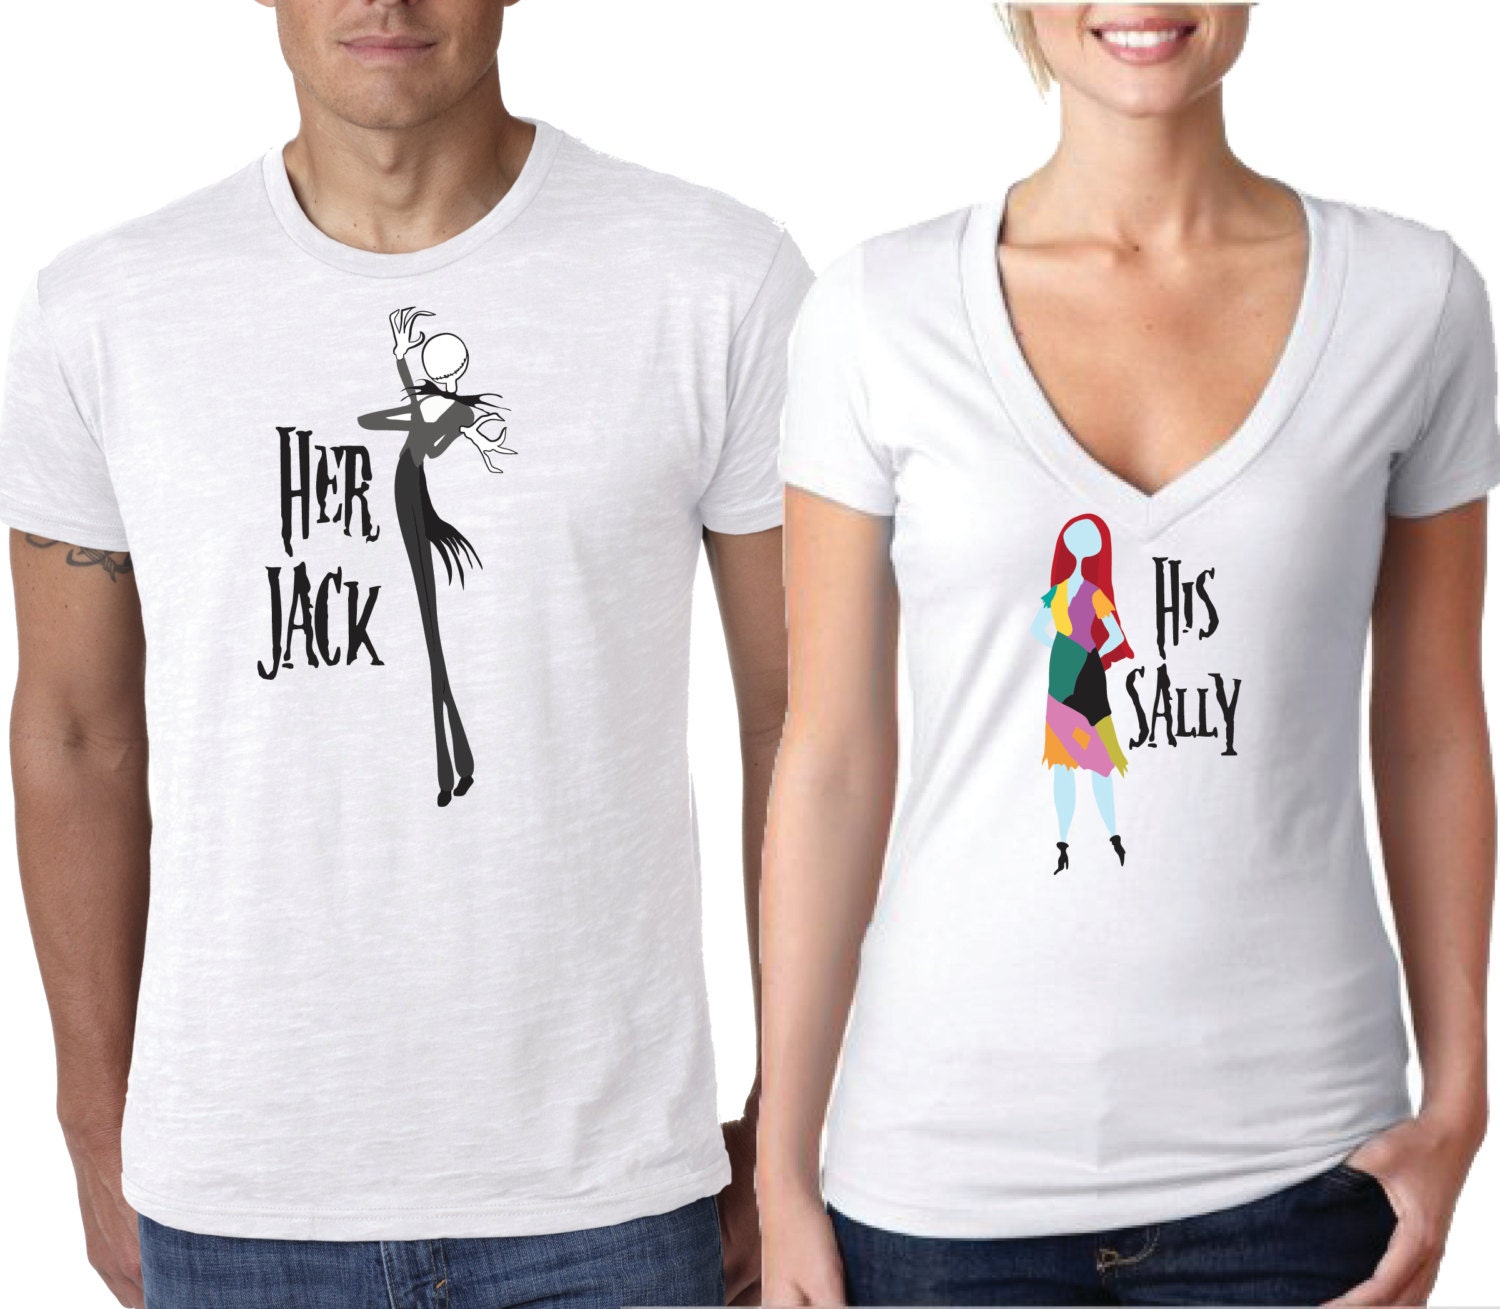 Jack and Sally Shirts Nightmare before Christmas Shirts